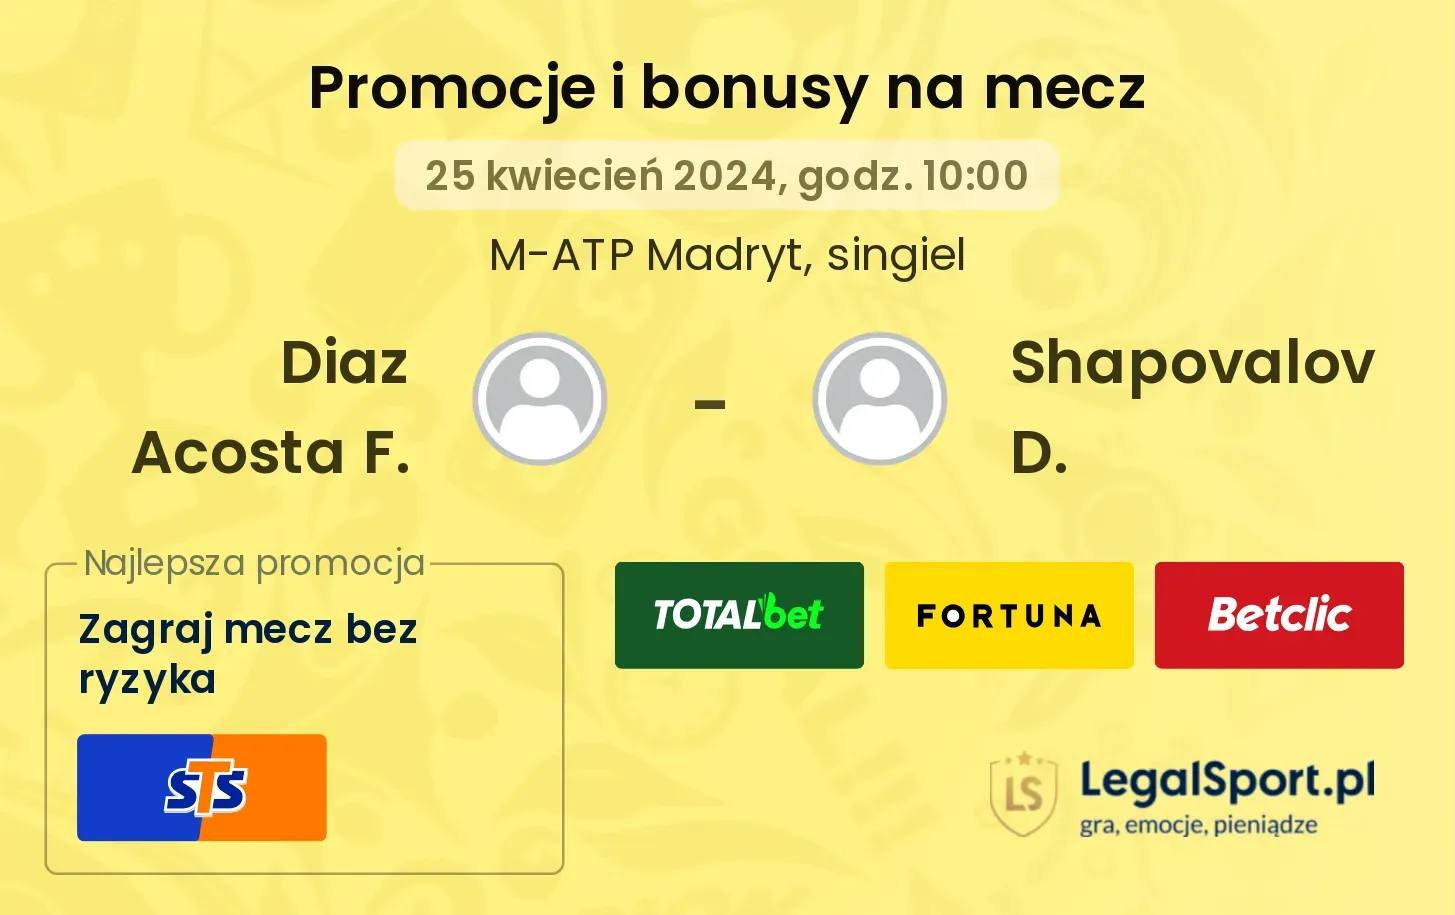 Diaz Acosta F. - Shapovalov D. promocje bonusy na mecz